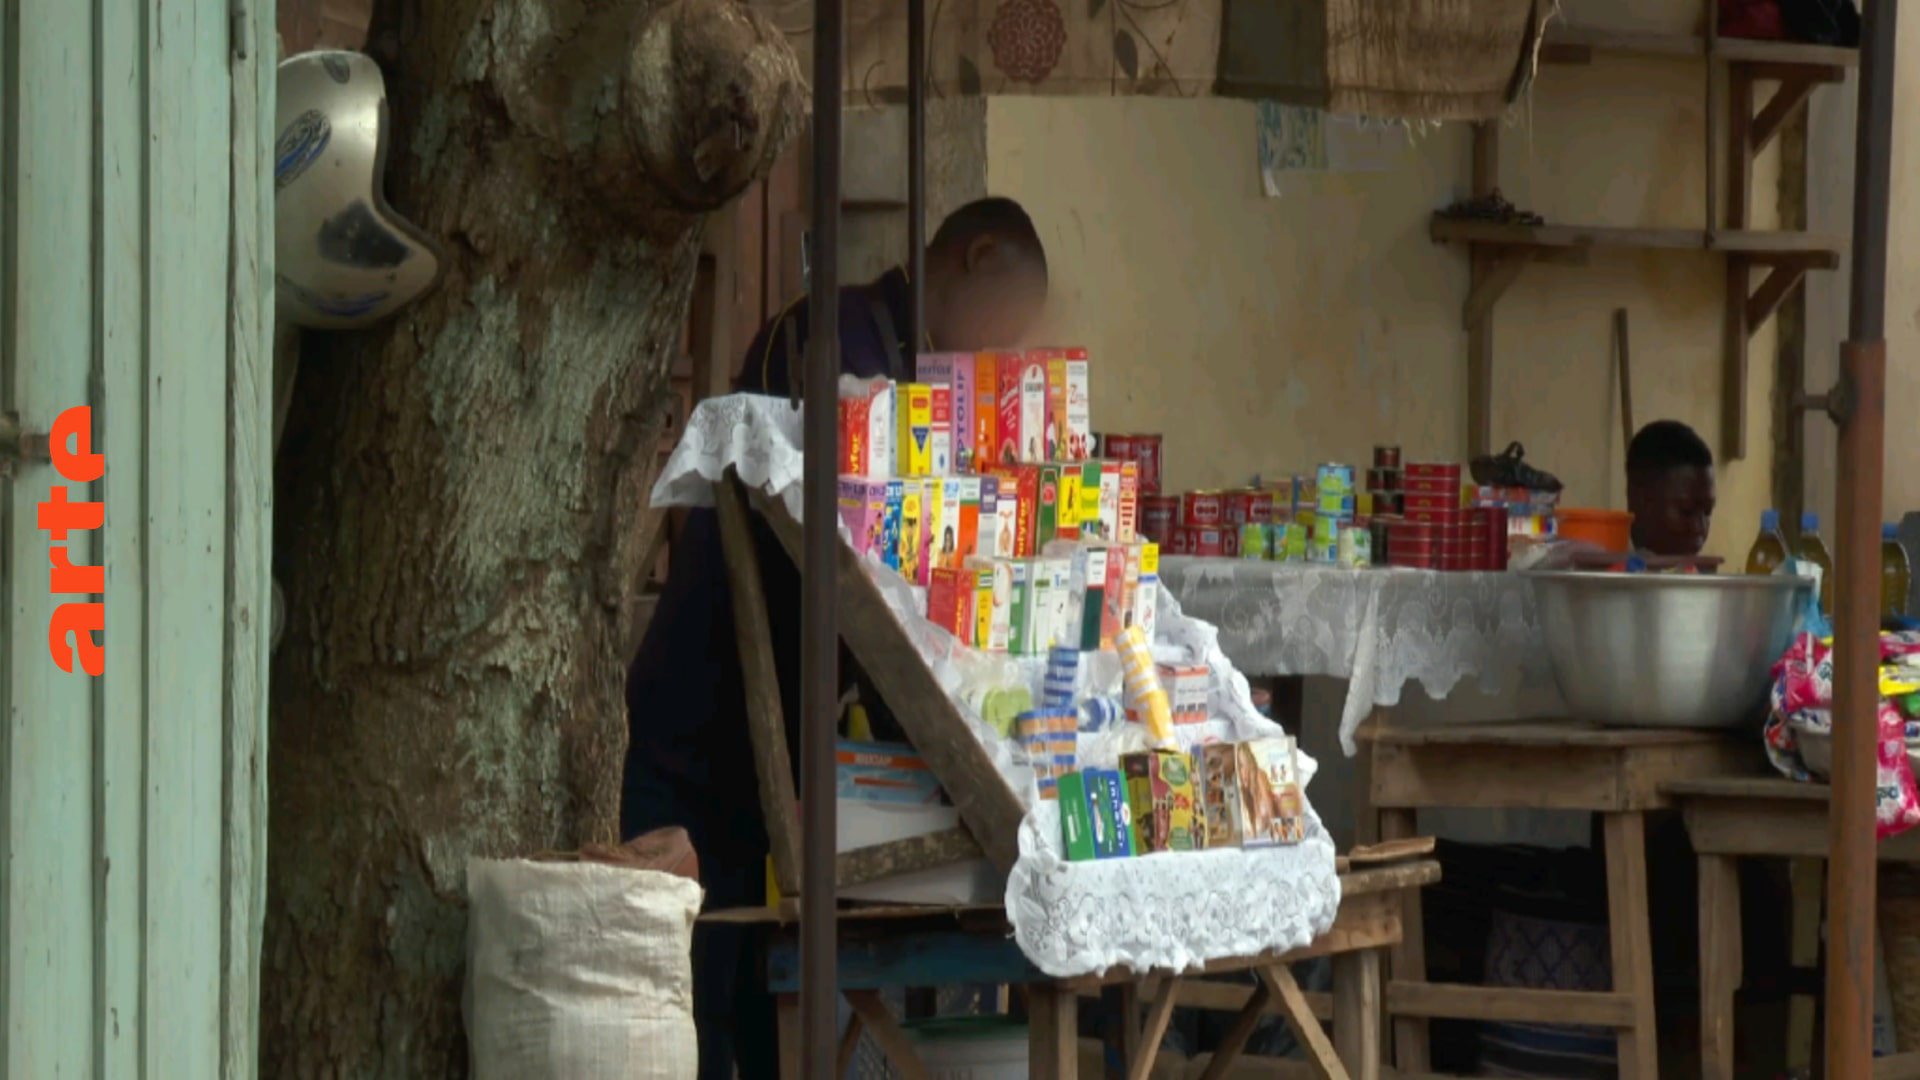 Togo: Krank durch gefälschte Medikamente